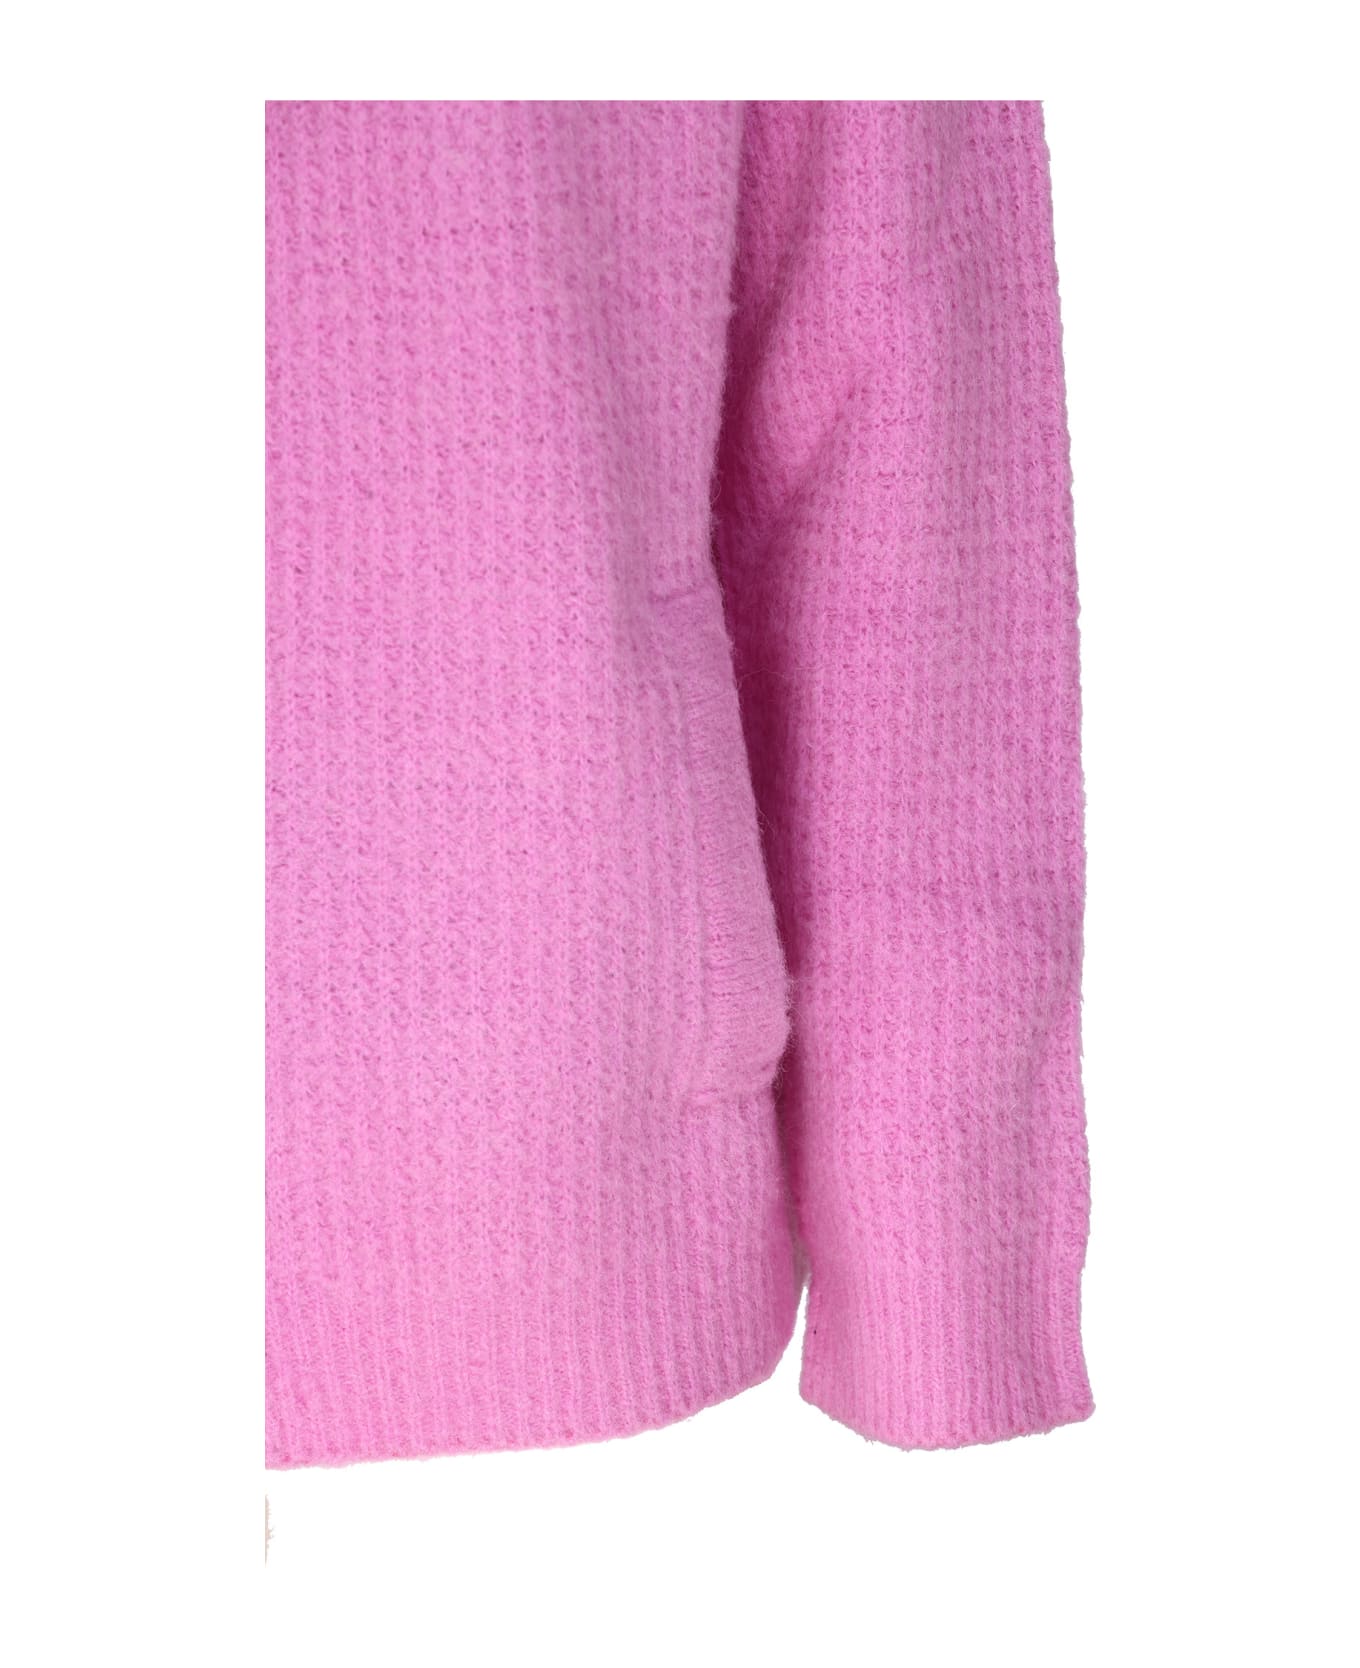 Giorgio Armani Hooded Sweater Giorgio Armani - PINK